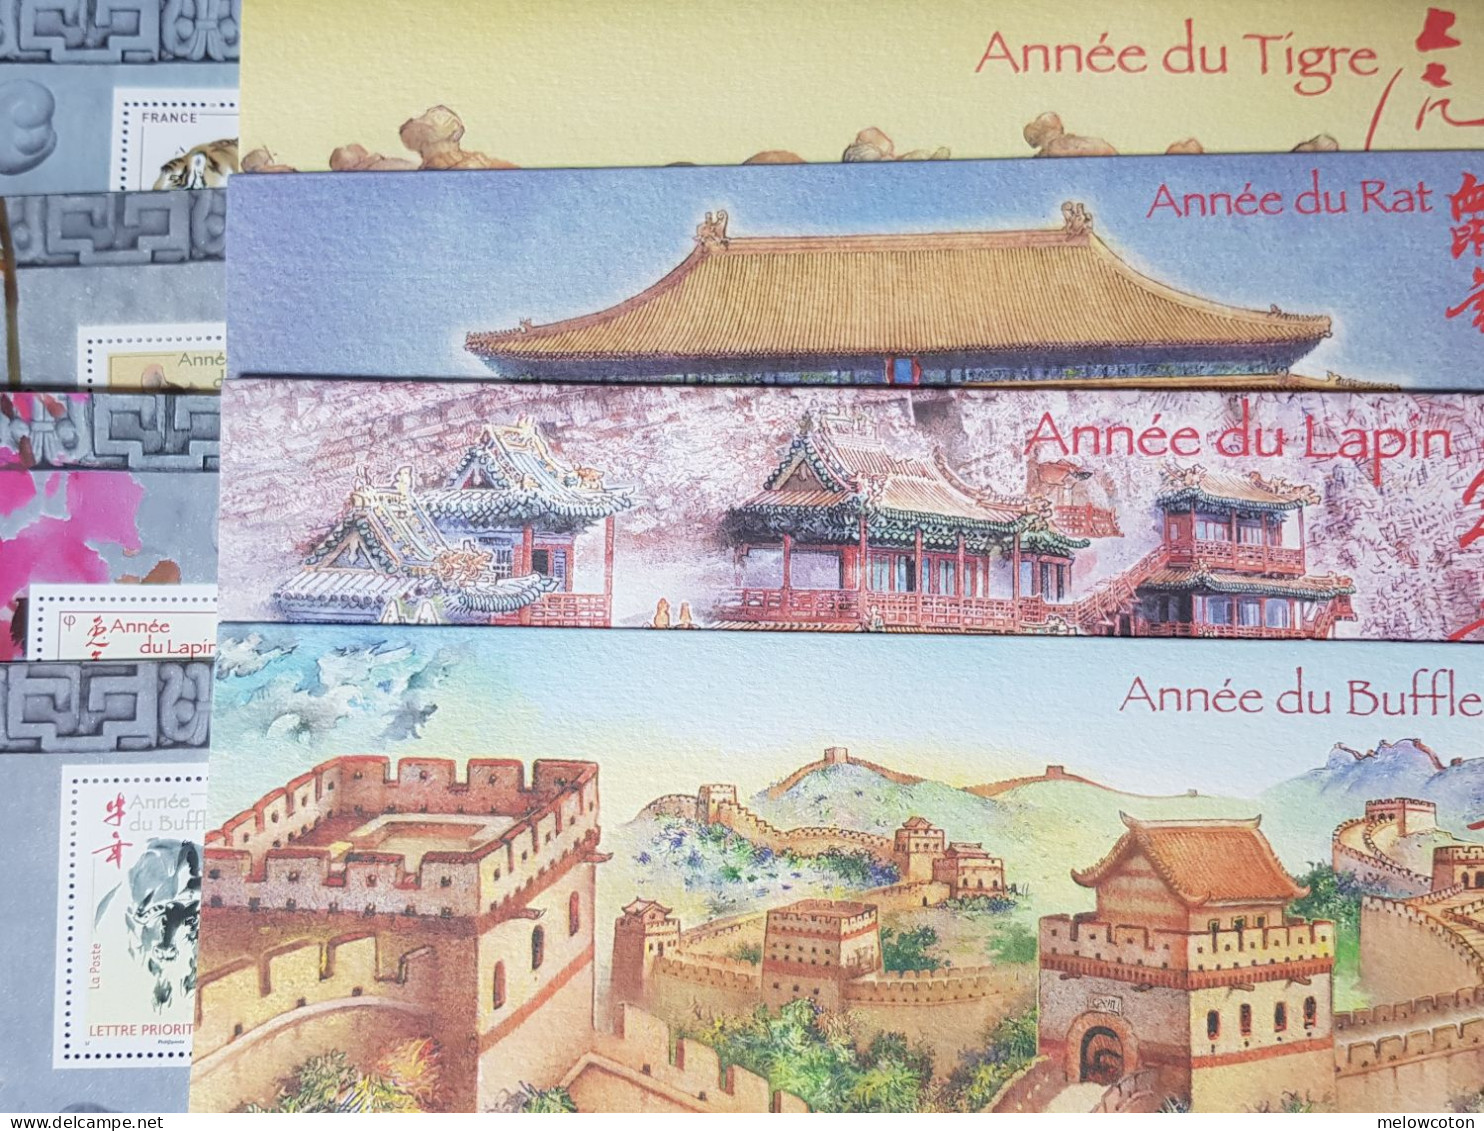 33 36 47 57 Années Chinoises - Souvenir Blocks & Sheetlets